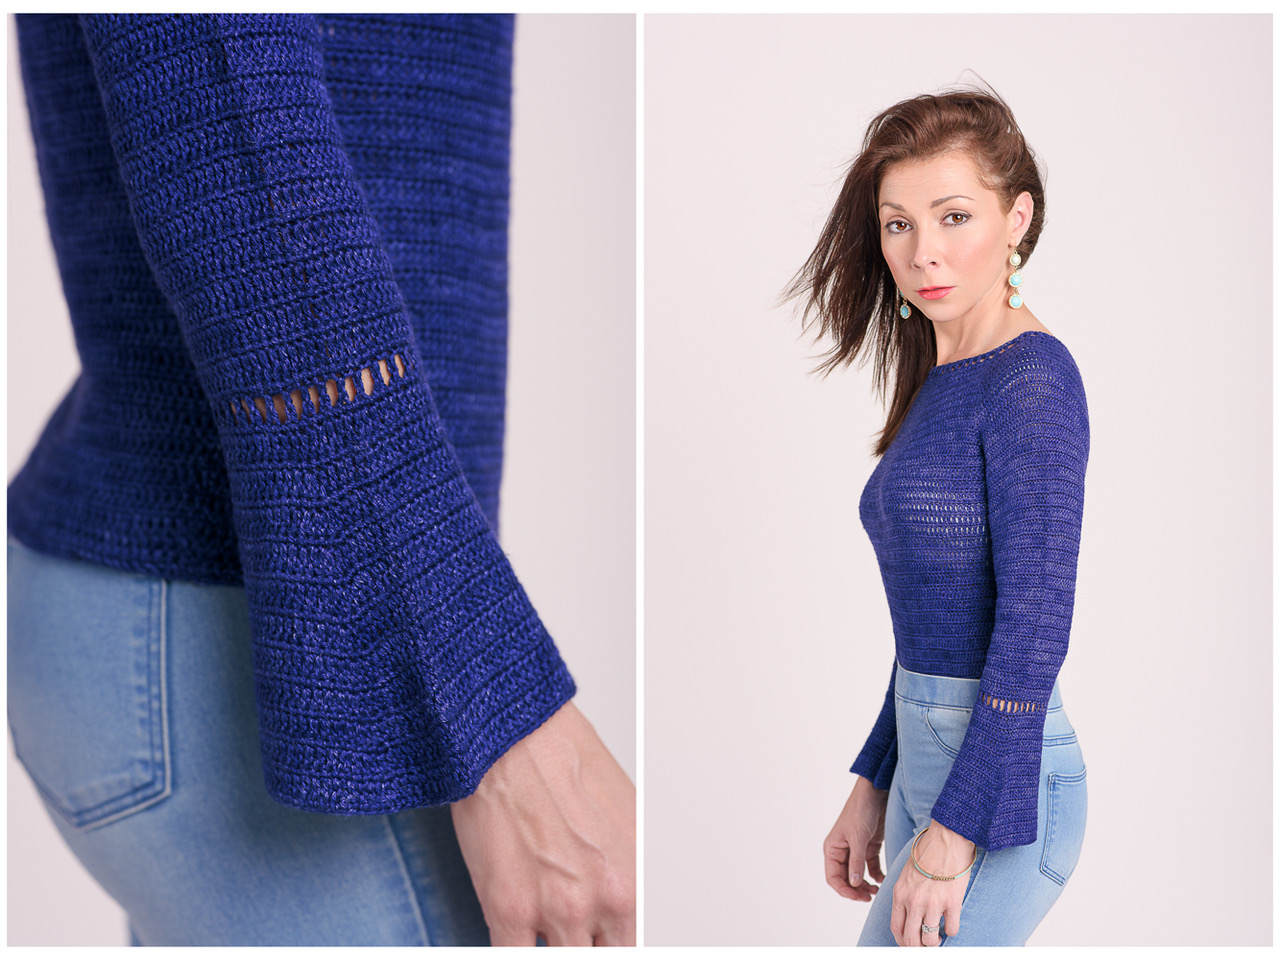 Belu crochet pullover sweater pattern